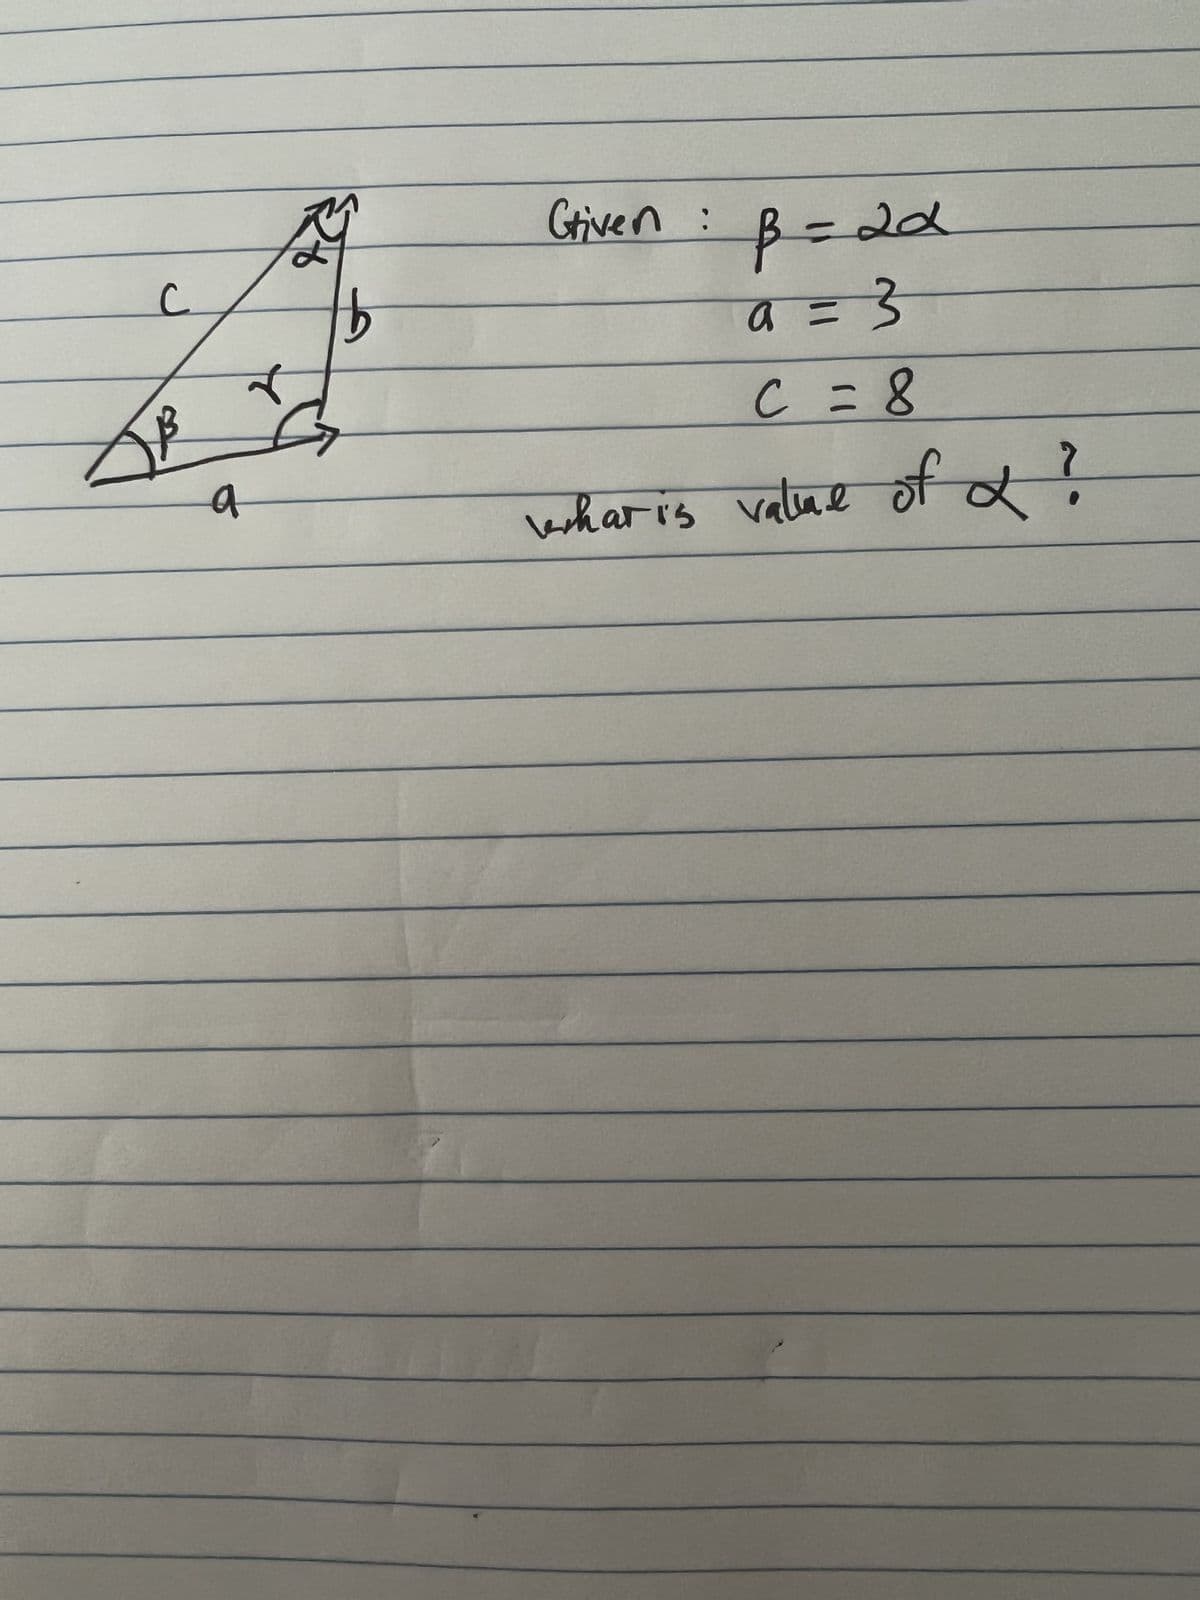 C
a
इस
b
Griven
p=21
: P
a =
= 3
c = 8
whar is value of d?